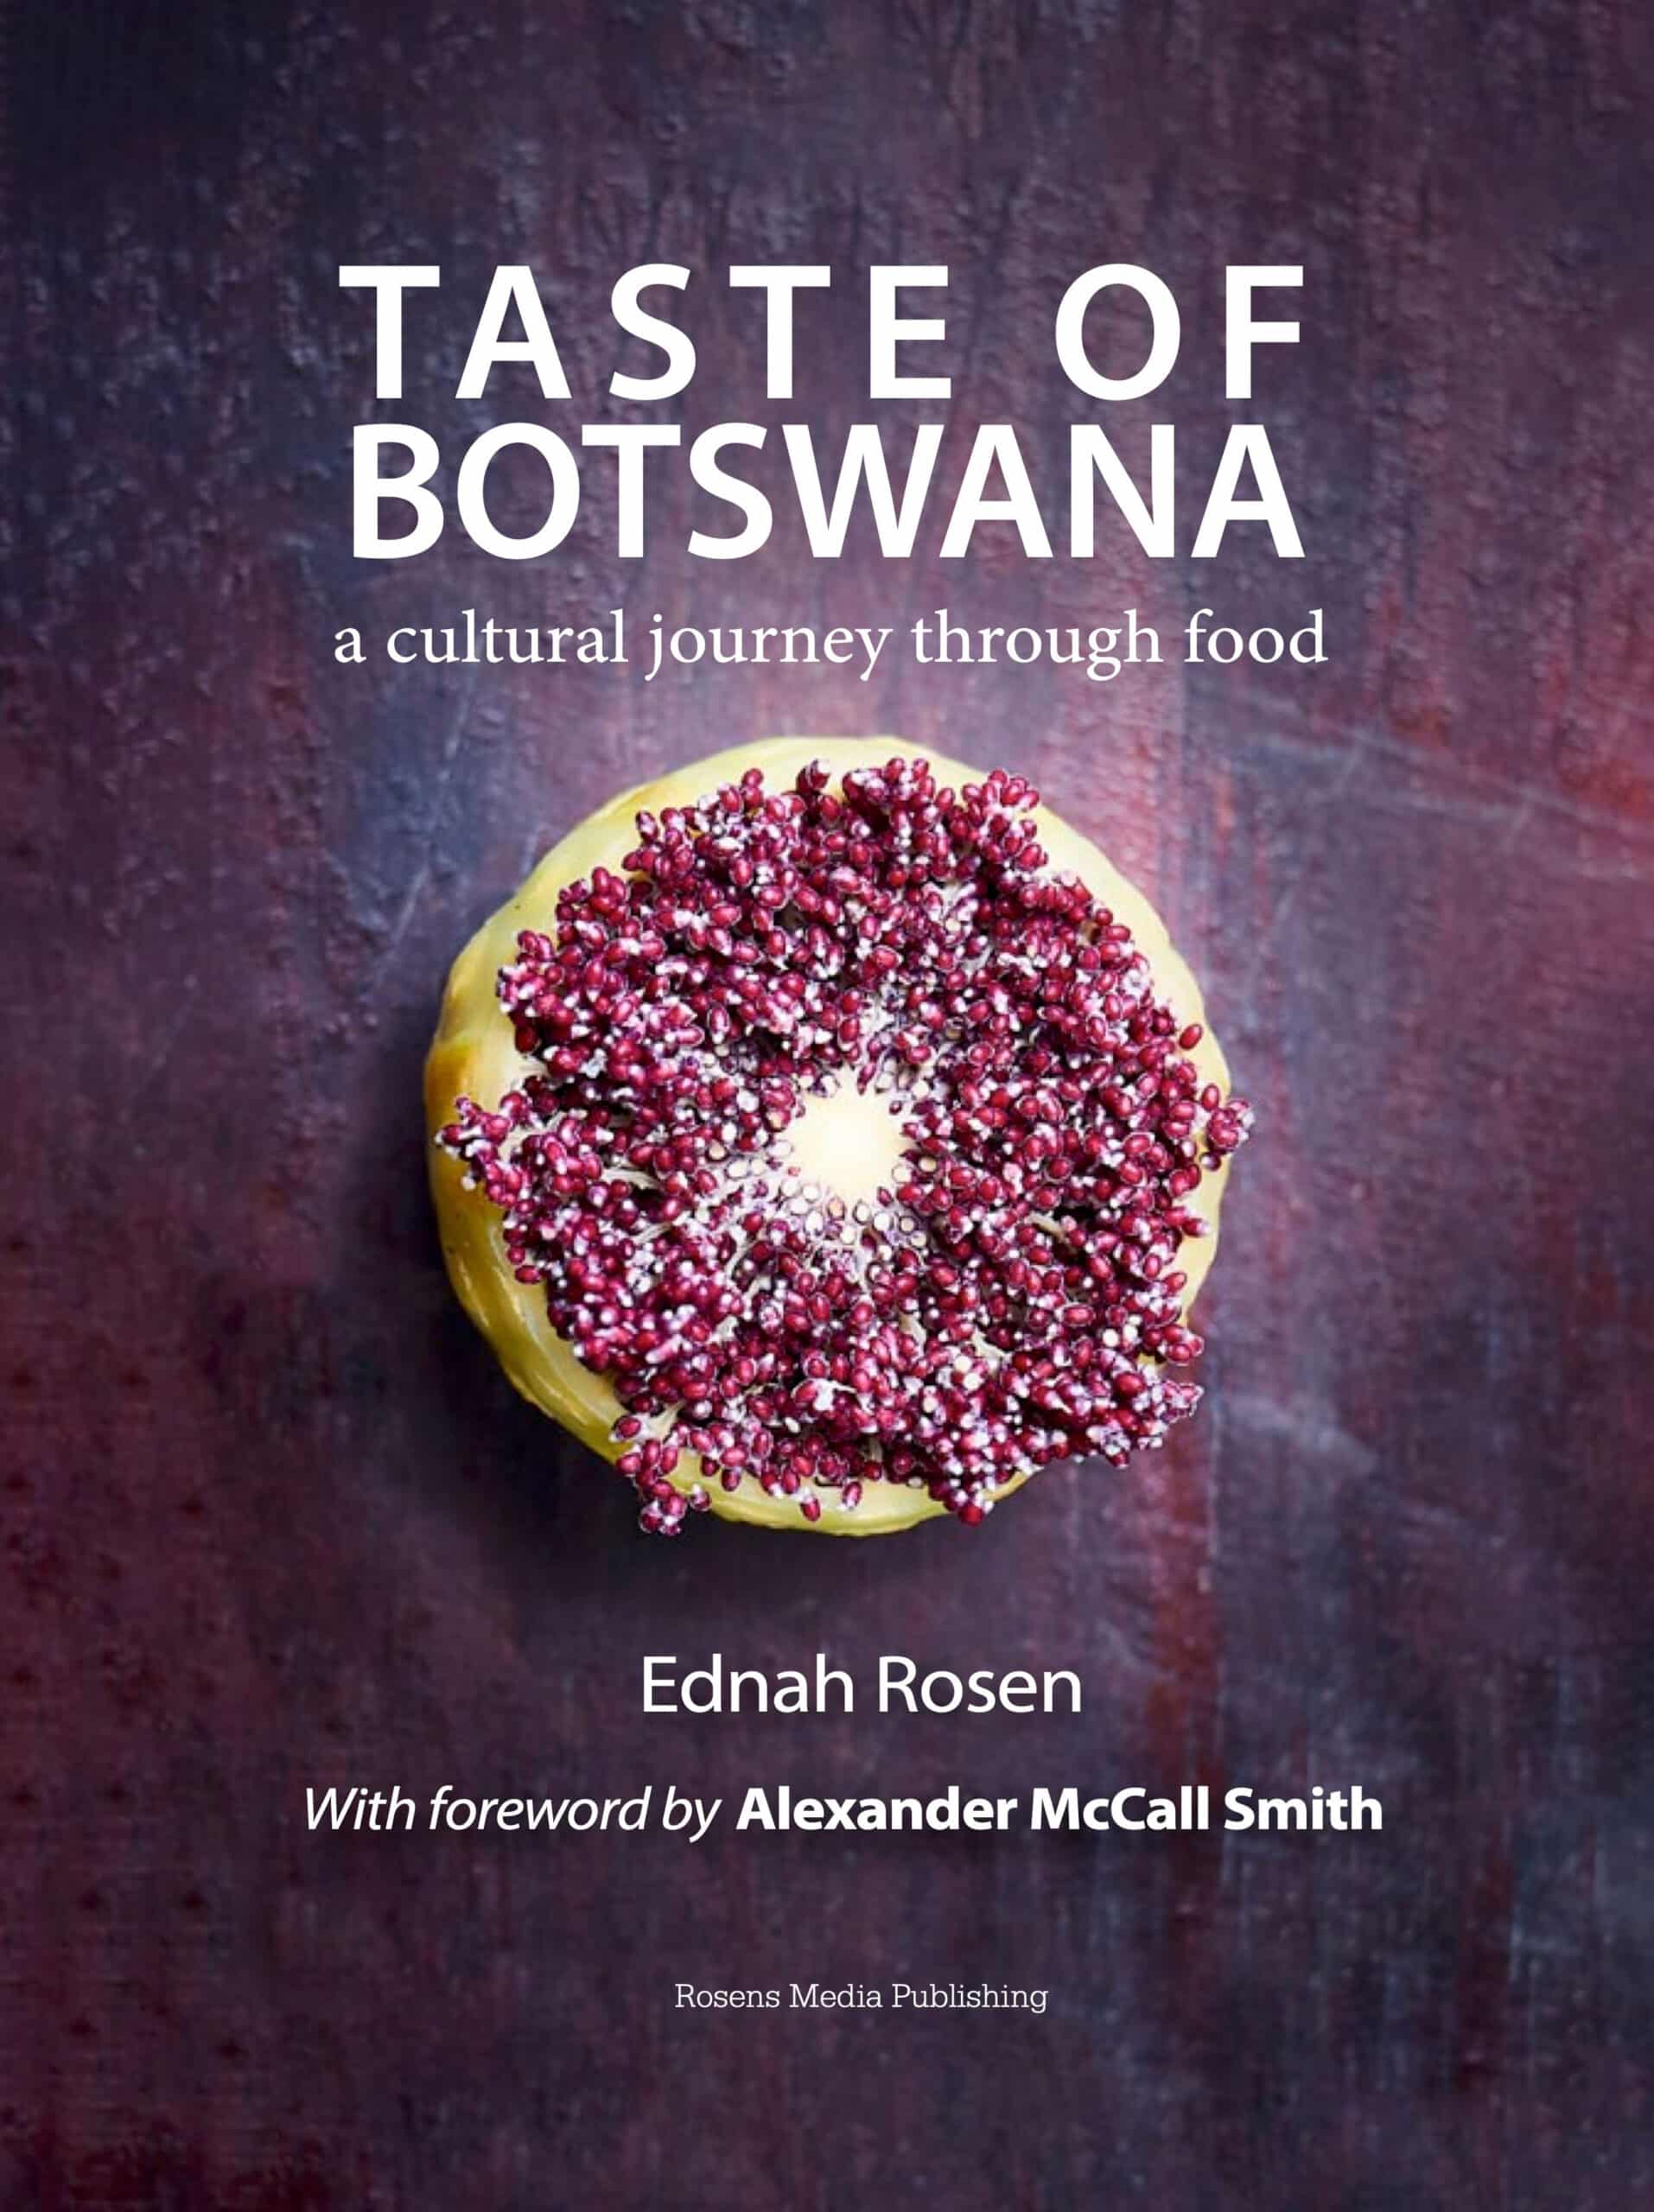 Meet Taste of Botswana author, Ednah Rosen